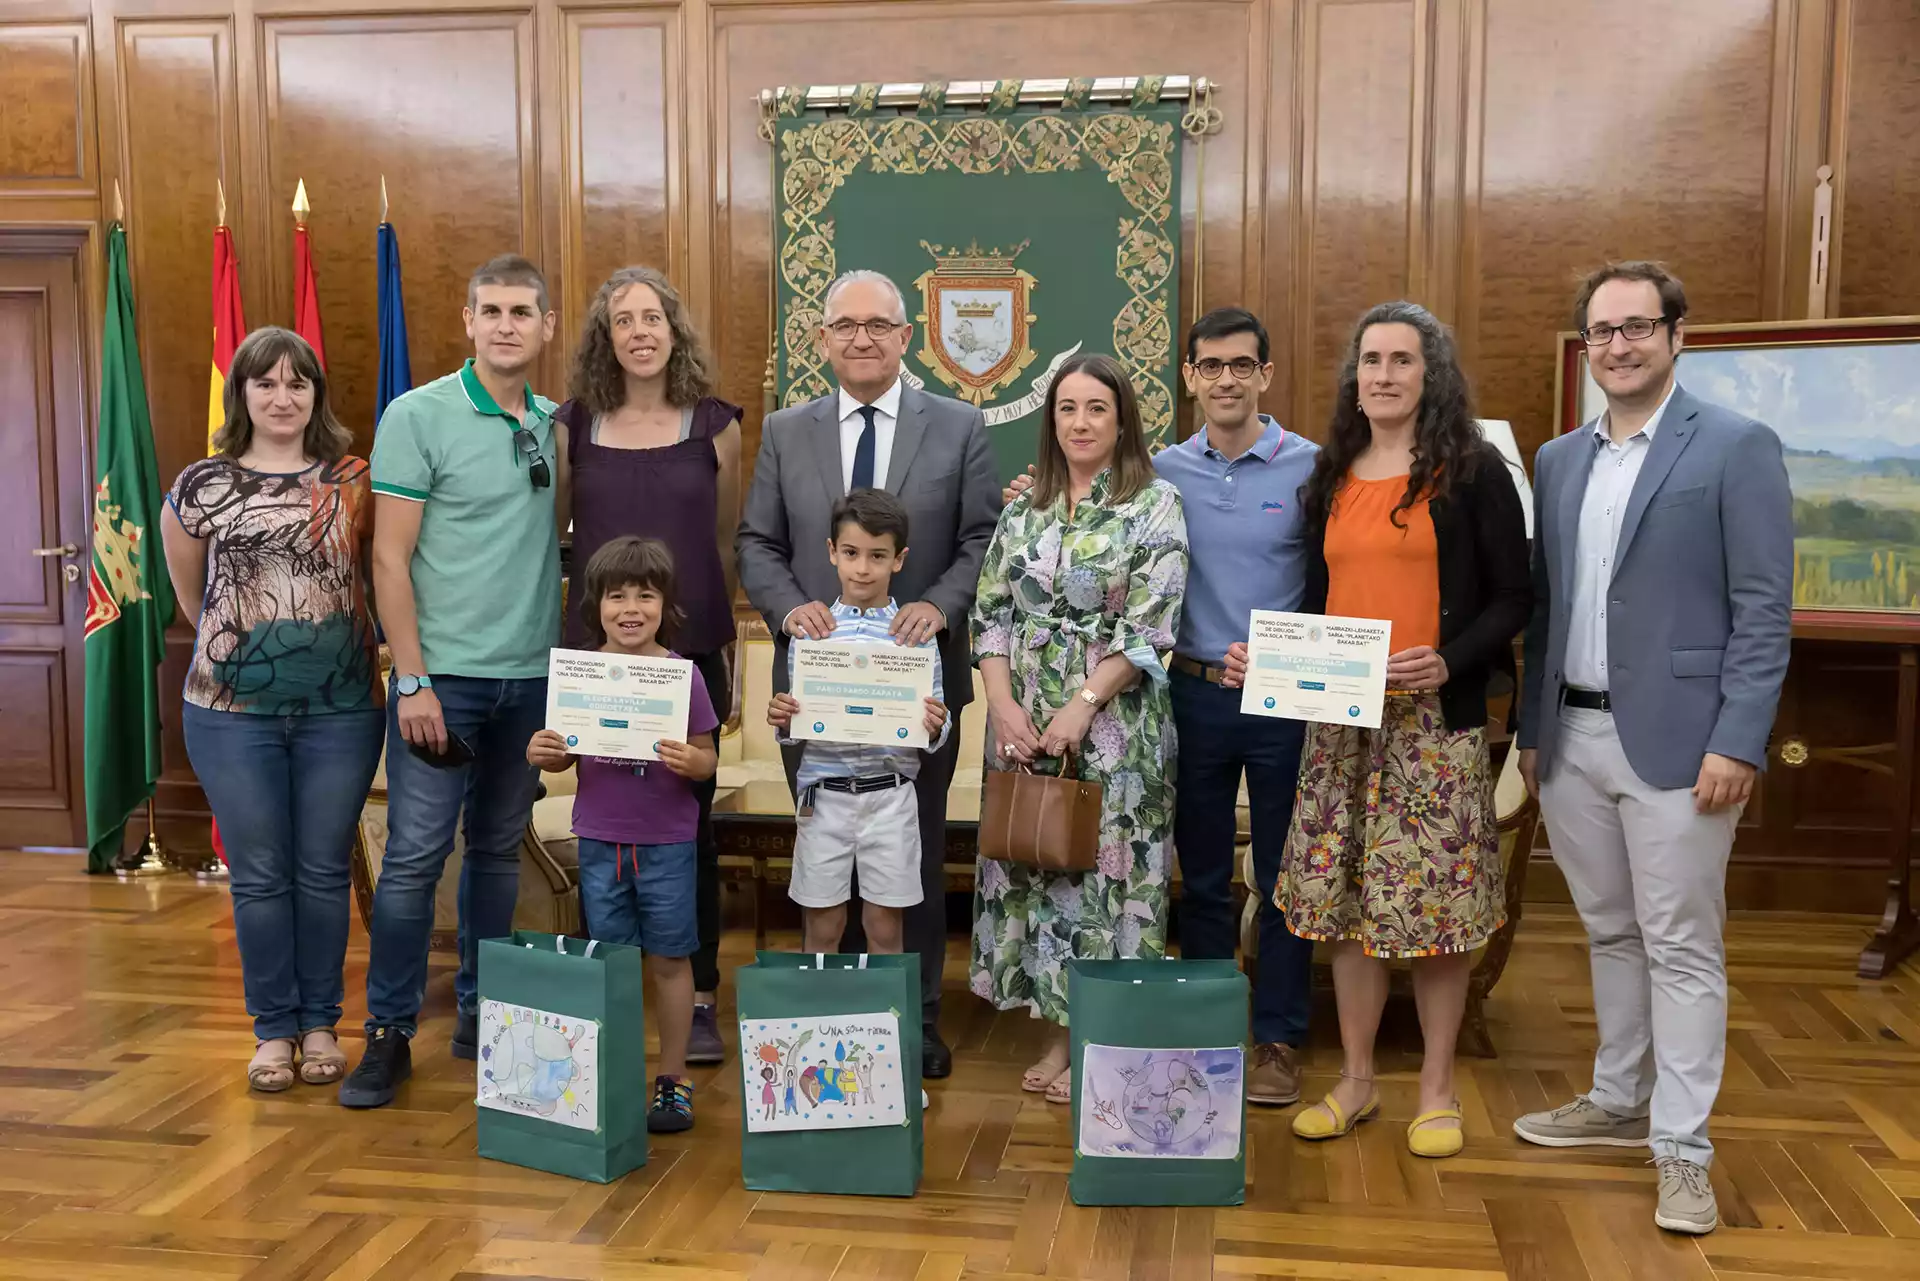 El alcalde de Pamplona entrega los premios del concurso infantil de dibujo ‘Una sola tierra’, organizado por el Ayuntamiento en torno al Día Mundial del Medio Ambiente